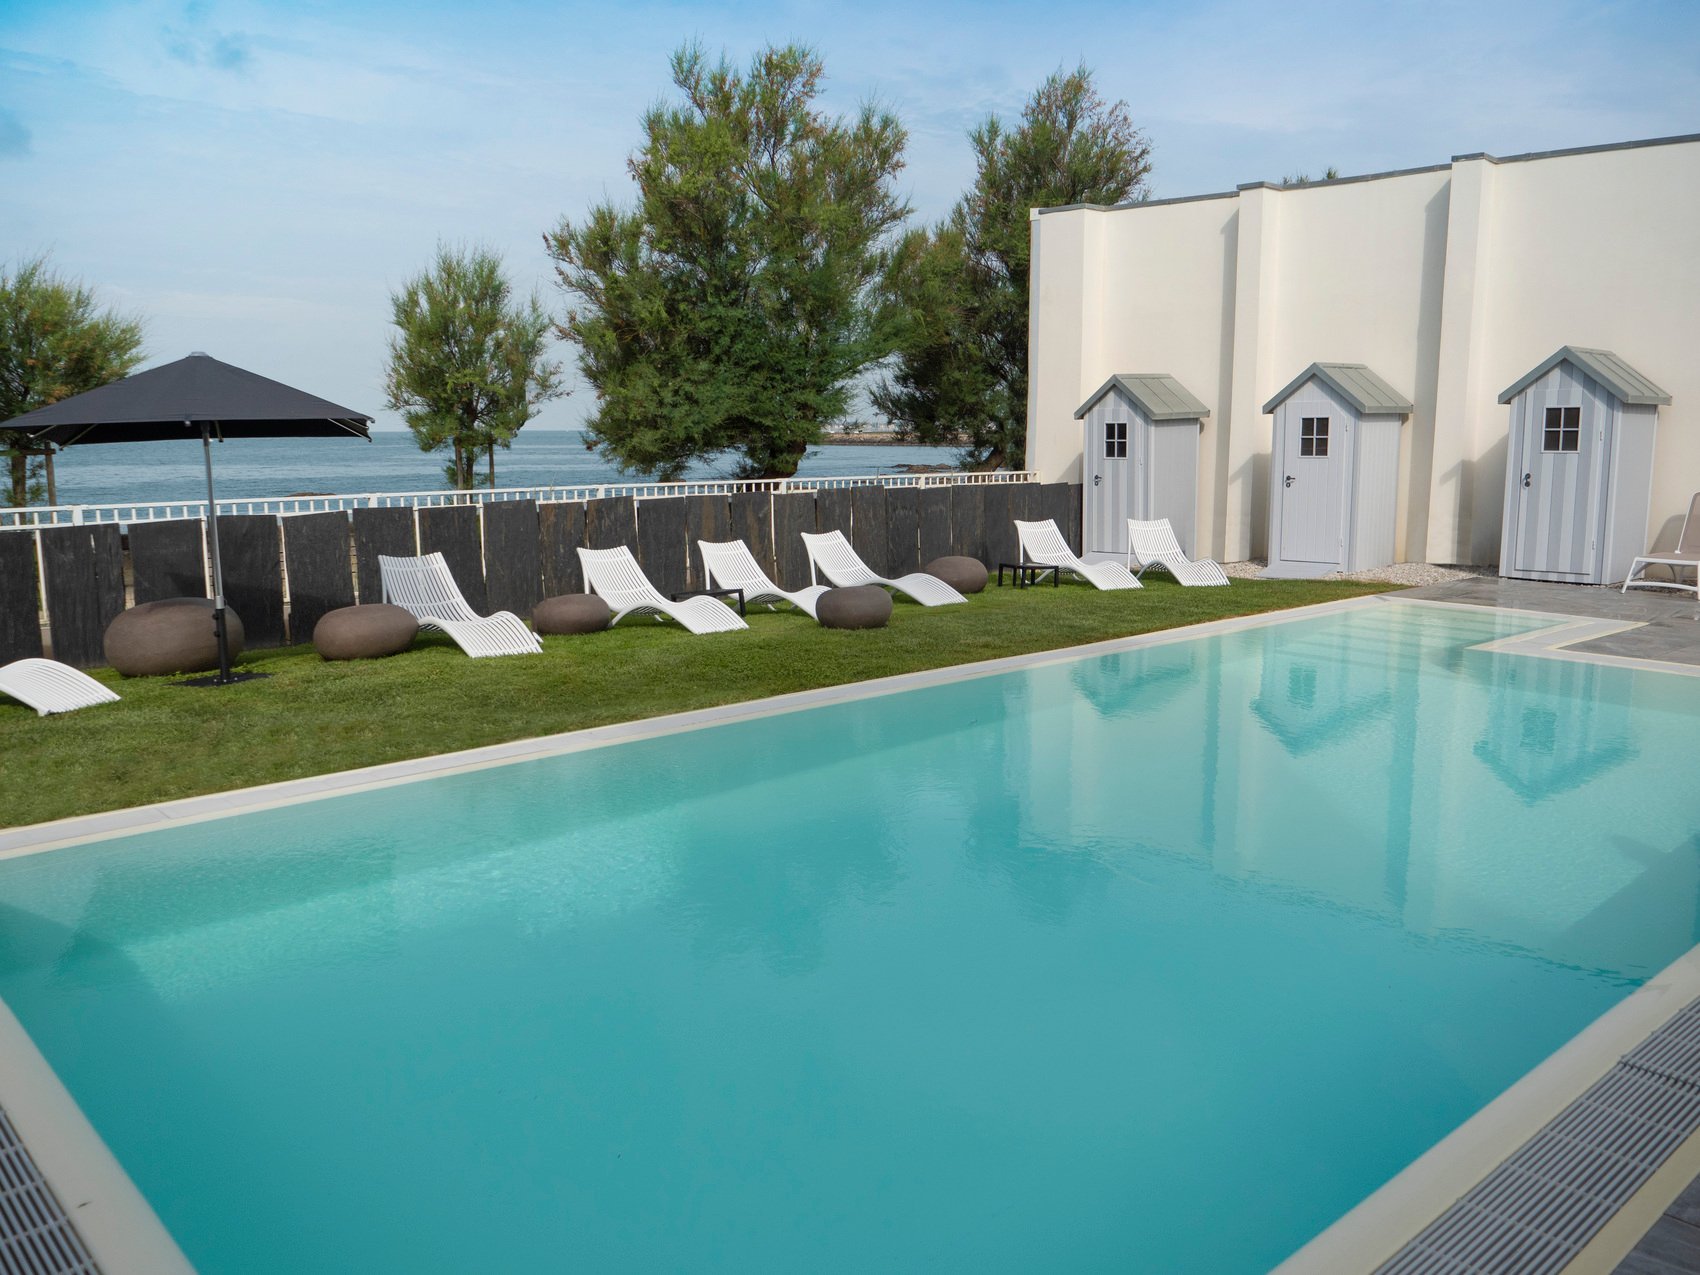 Luxury hotel Château des Tourelles 4 star hotel Thalasso Spa Baie de La Baule France - outdoor pool